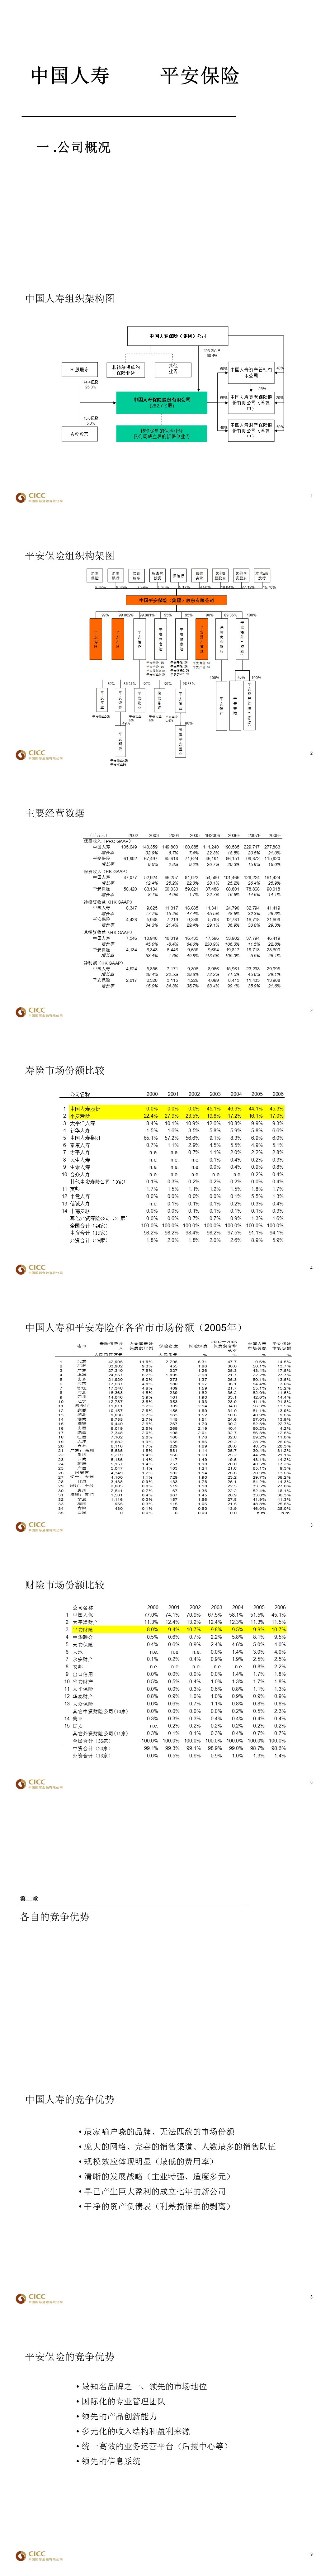 中國人寿与平安保险的直观比较介绍PPT下载-聚给网